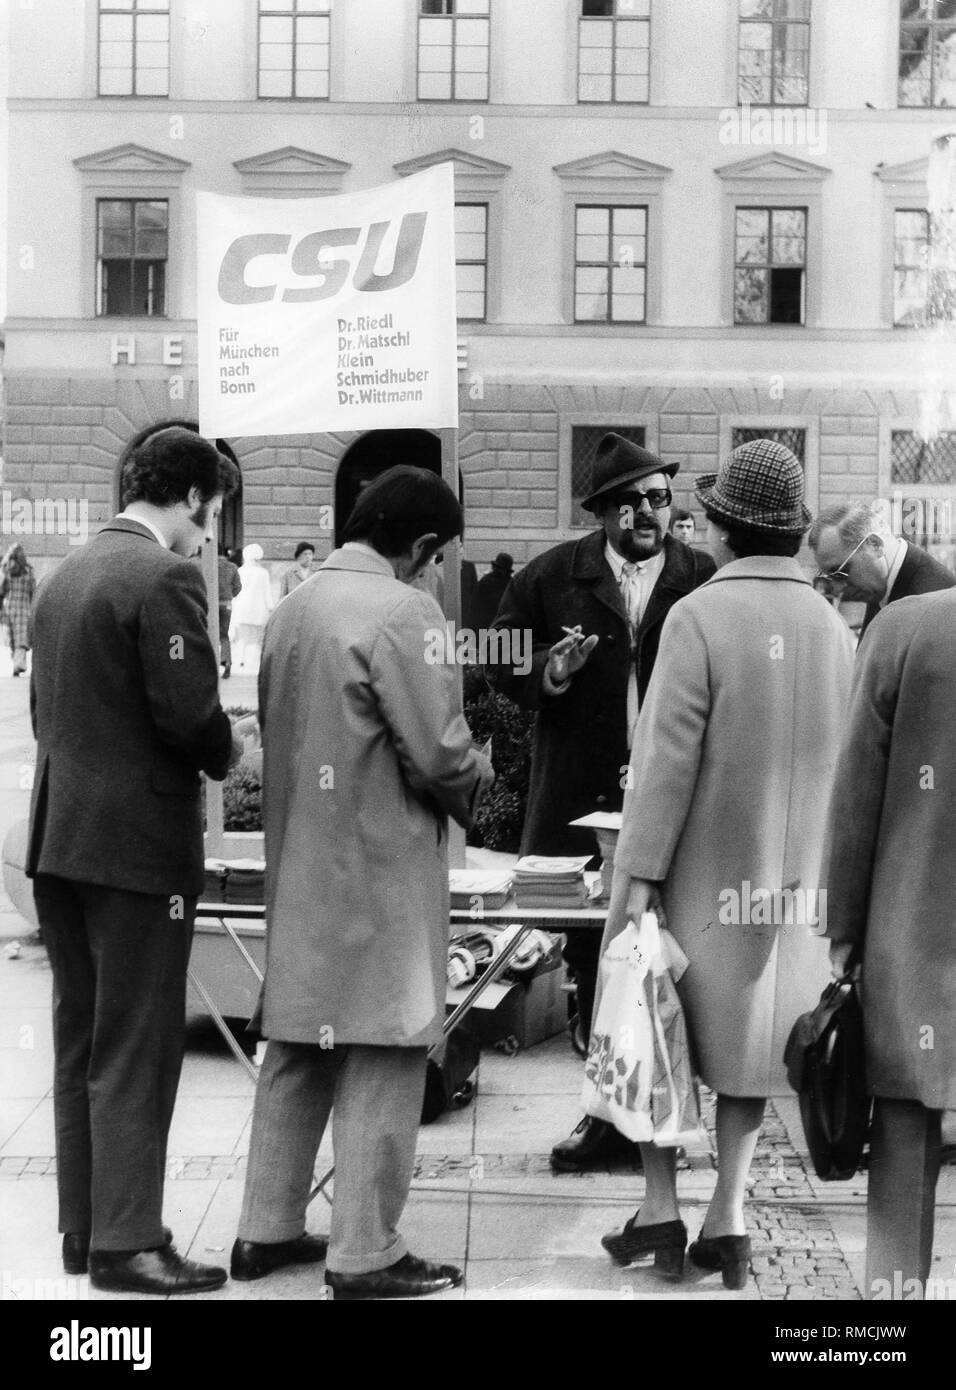 Infostand der CSU in der Fußgängerzone Kaufingerstraße in München. Auf einem Plakat steht "CSU für München nach Bonn Dr. Riedl, Dr. Matschl, Klein, Schmidhuber, Dr. Wittmann." Stockfoto